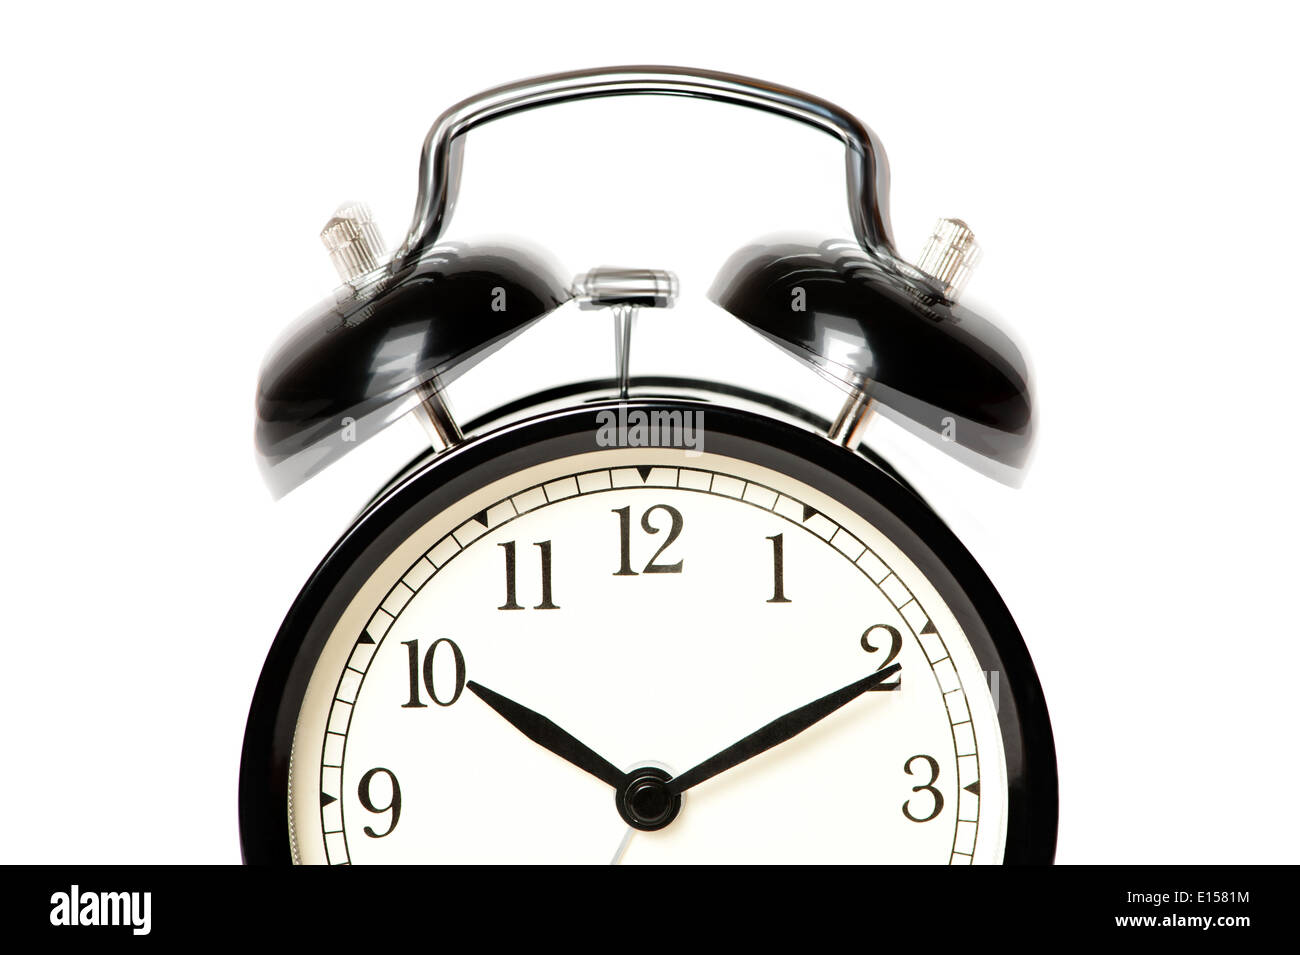 Black alarm clock isolated on white background Stock Photo